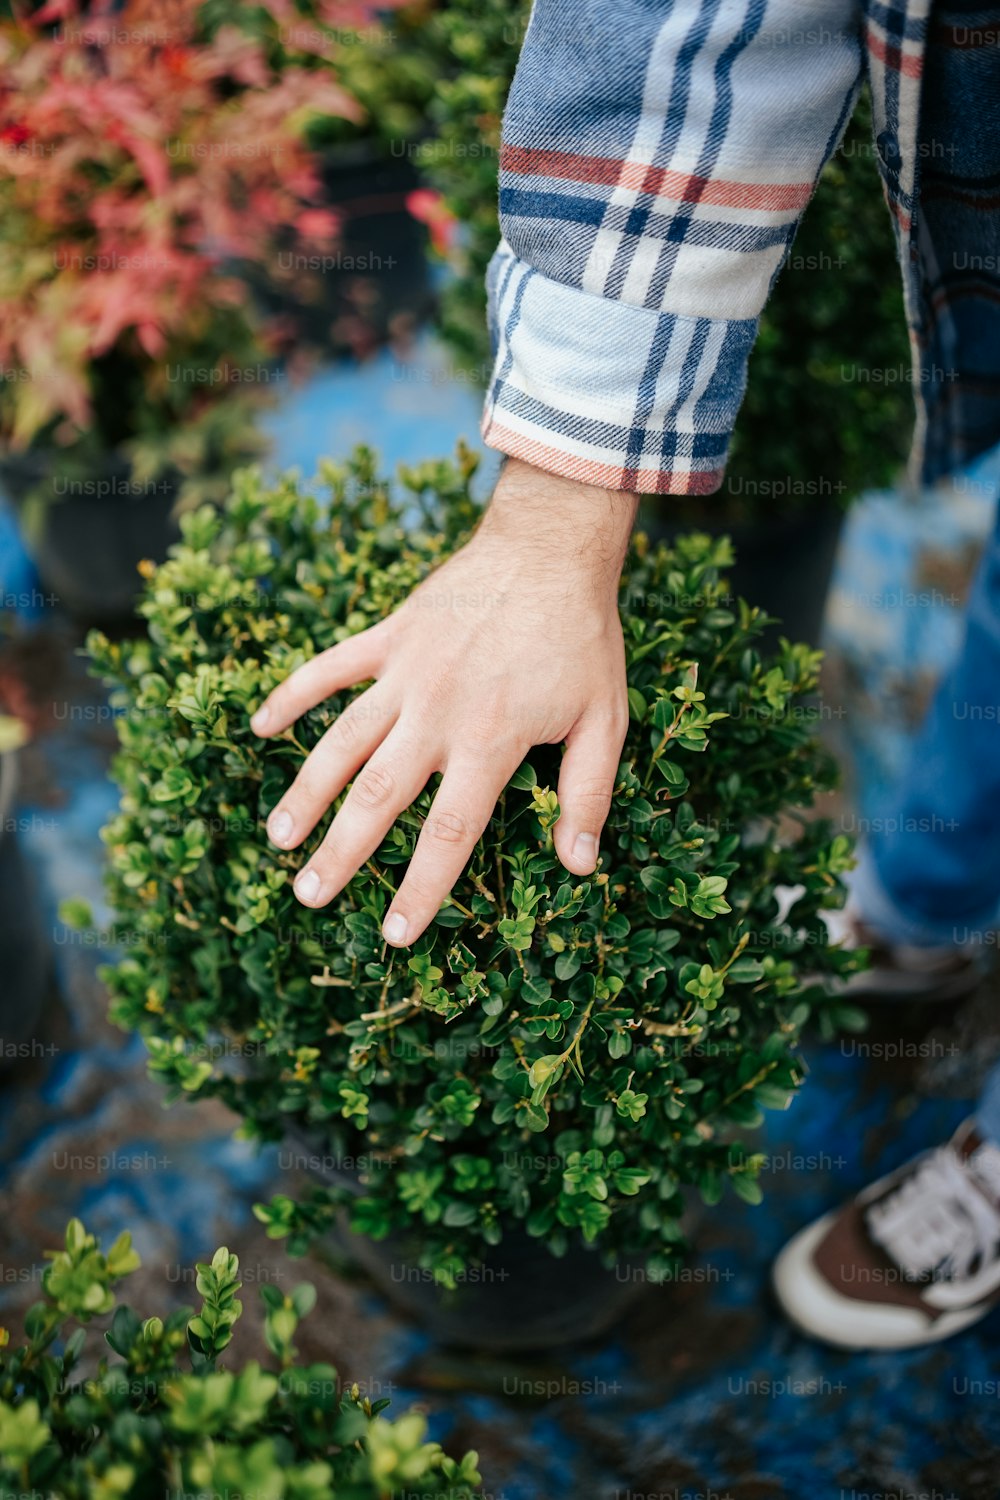 La mano de una persona encima de una planta en maceta